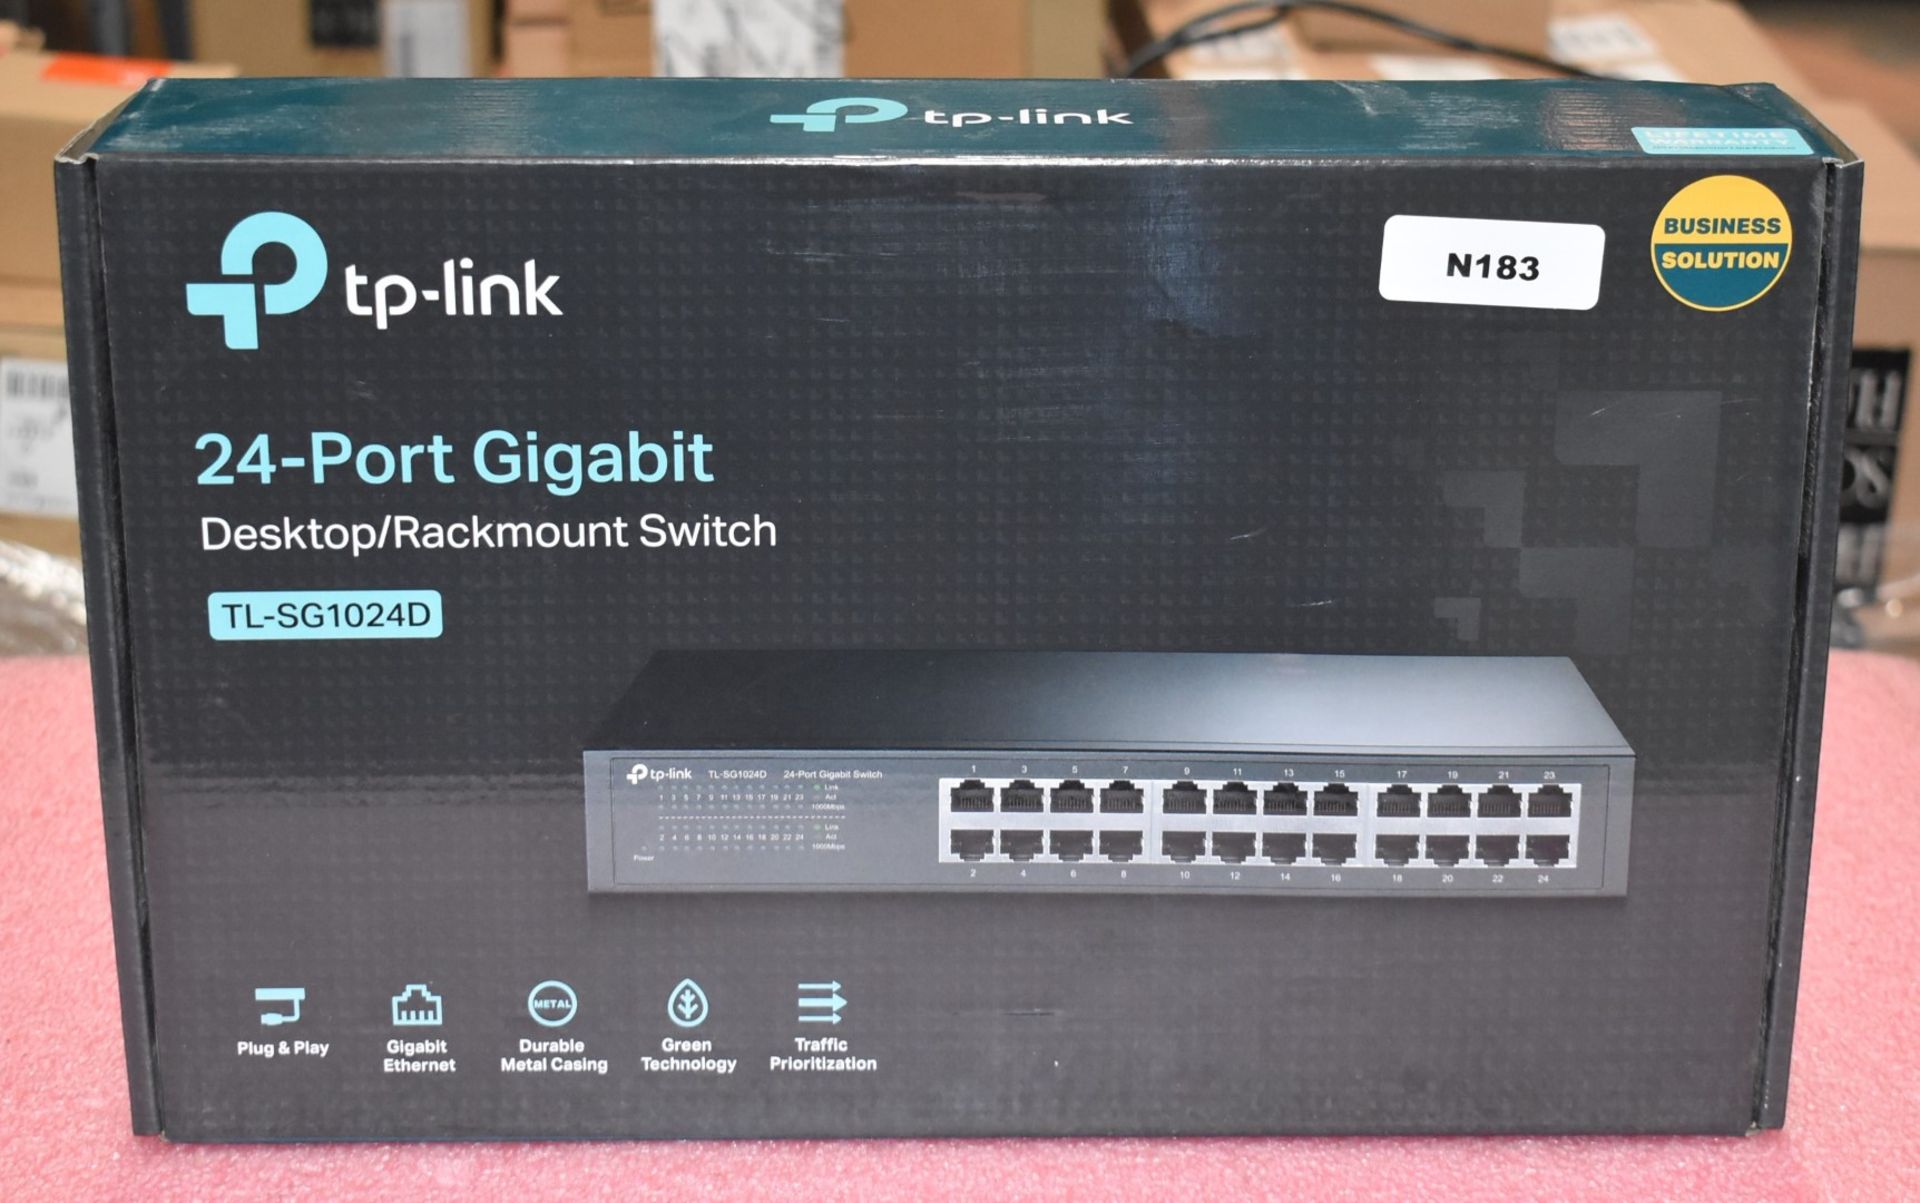 1 x TP Link 24 Port Gigabit Desktop/Rackmount Switch - Model TL-SG1024D - Image 5 of 7